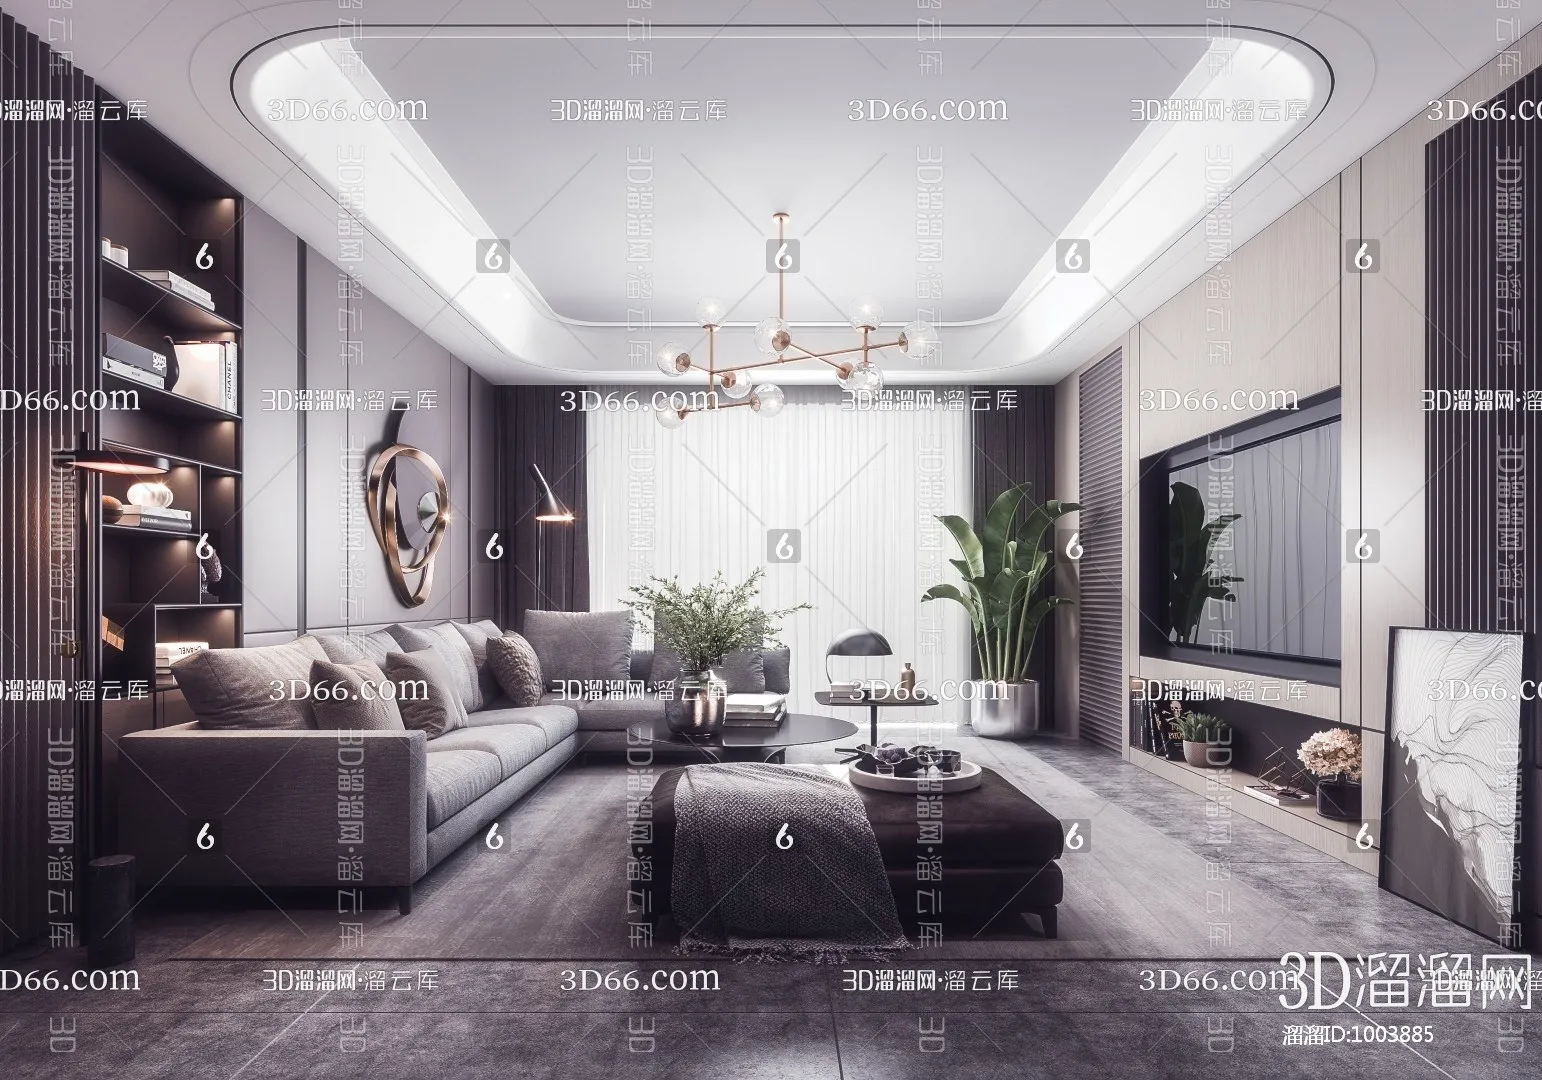 Living Room 3D Scenes – 0574